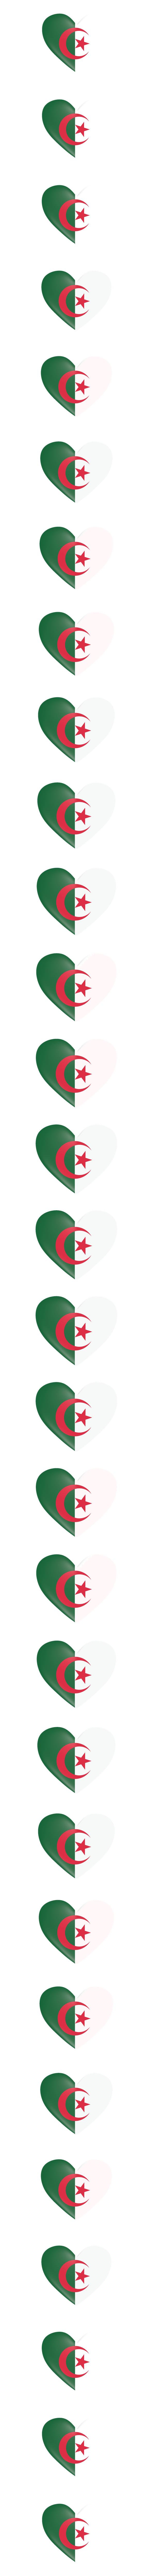 Algeria heart